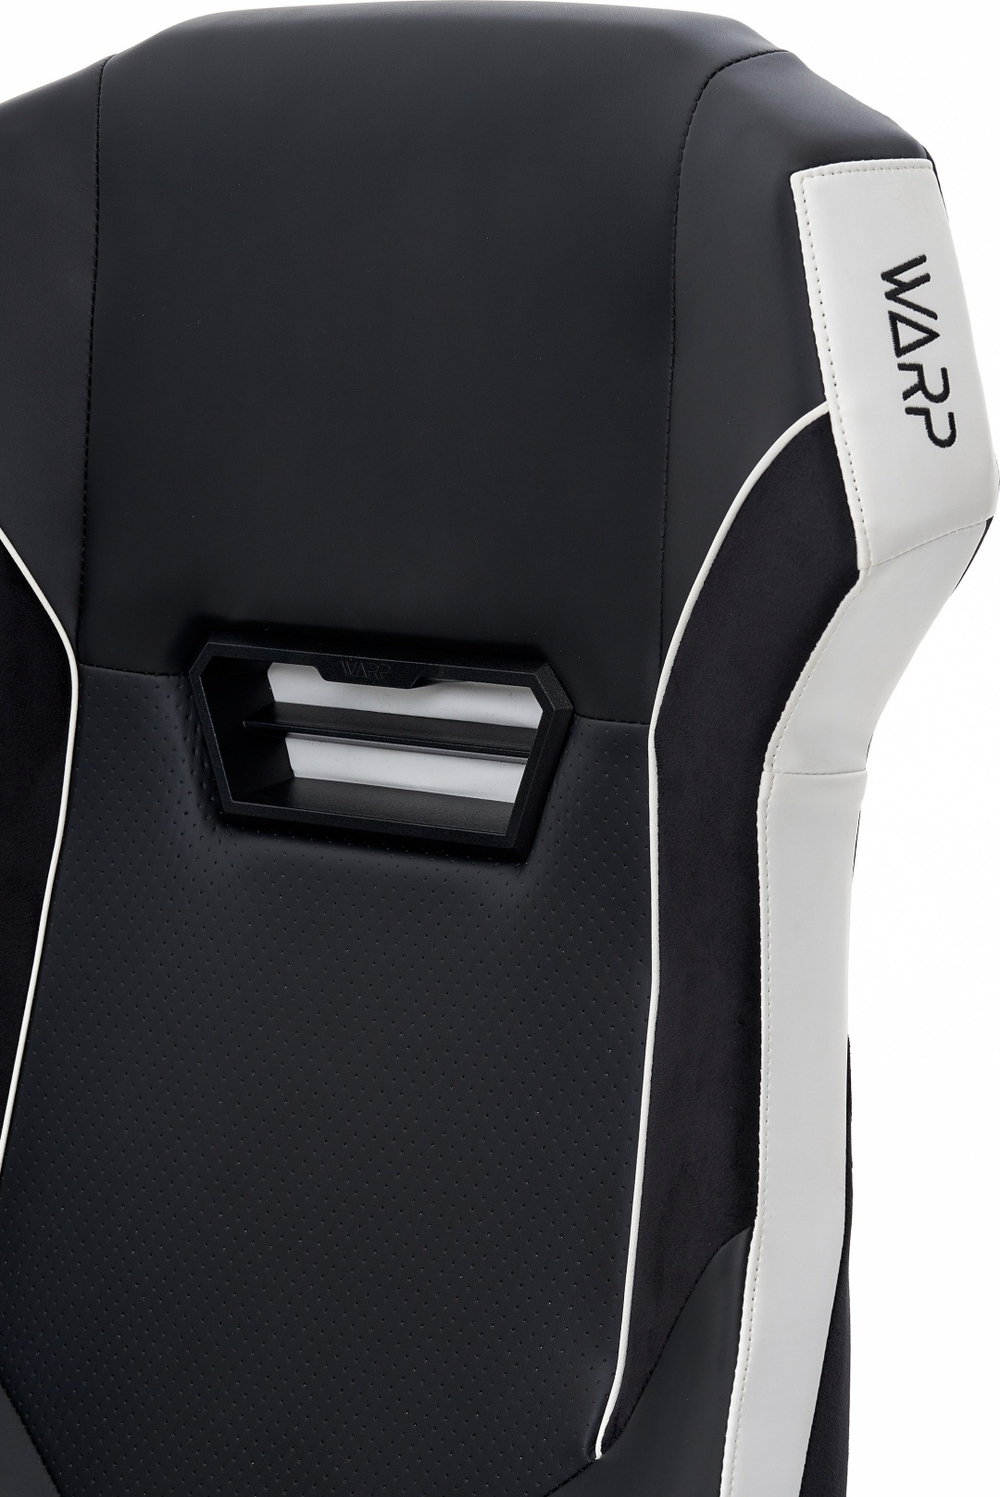 Компьютерное кресло WARP XD Noir (XD-BLW), черный, белый